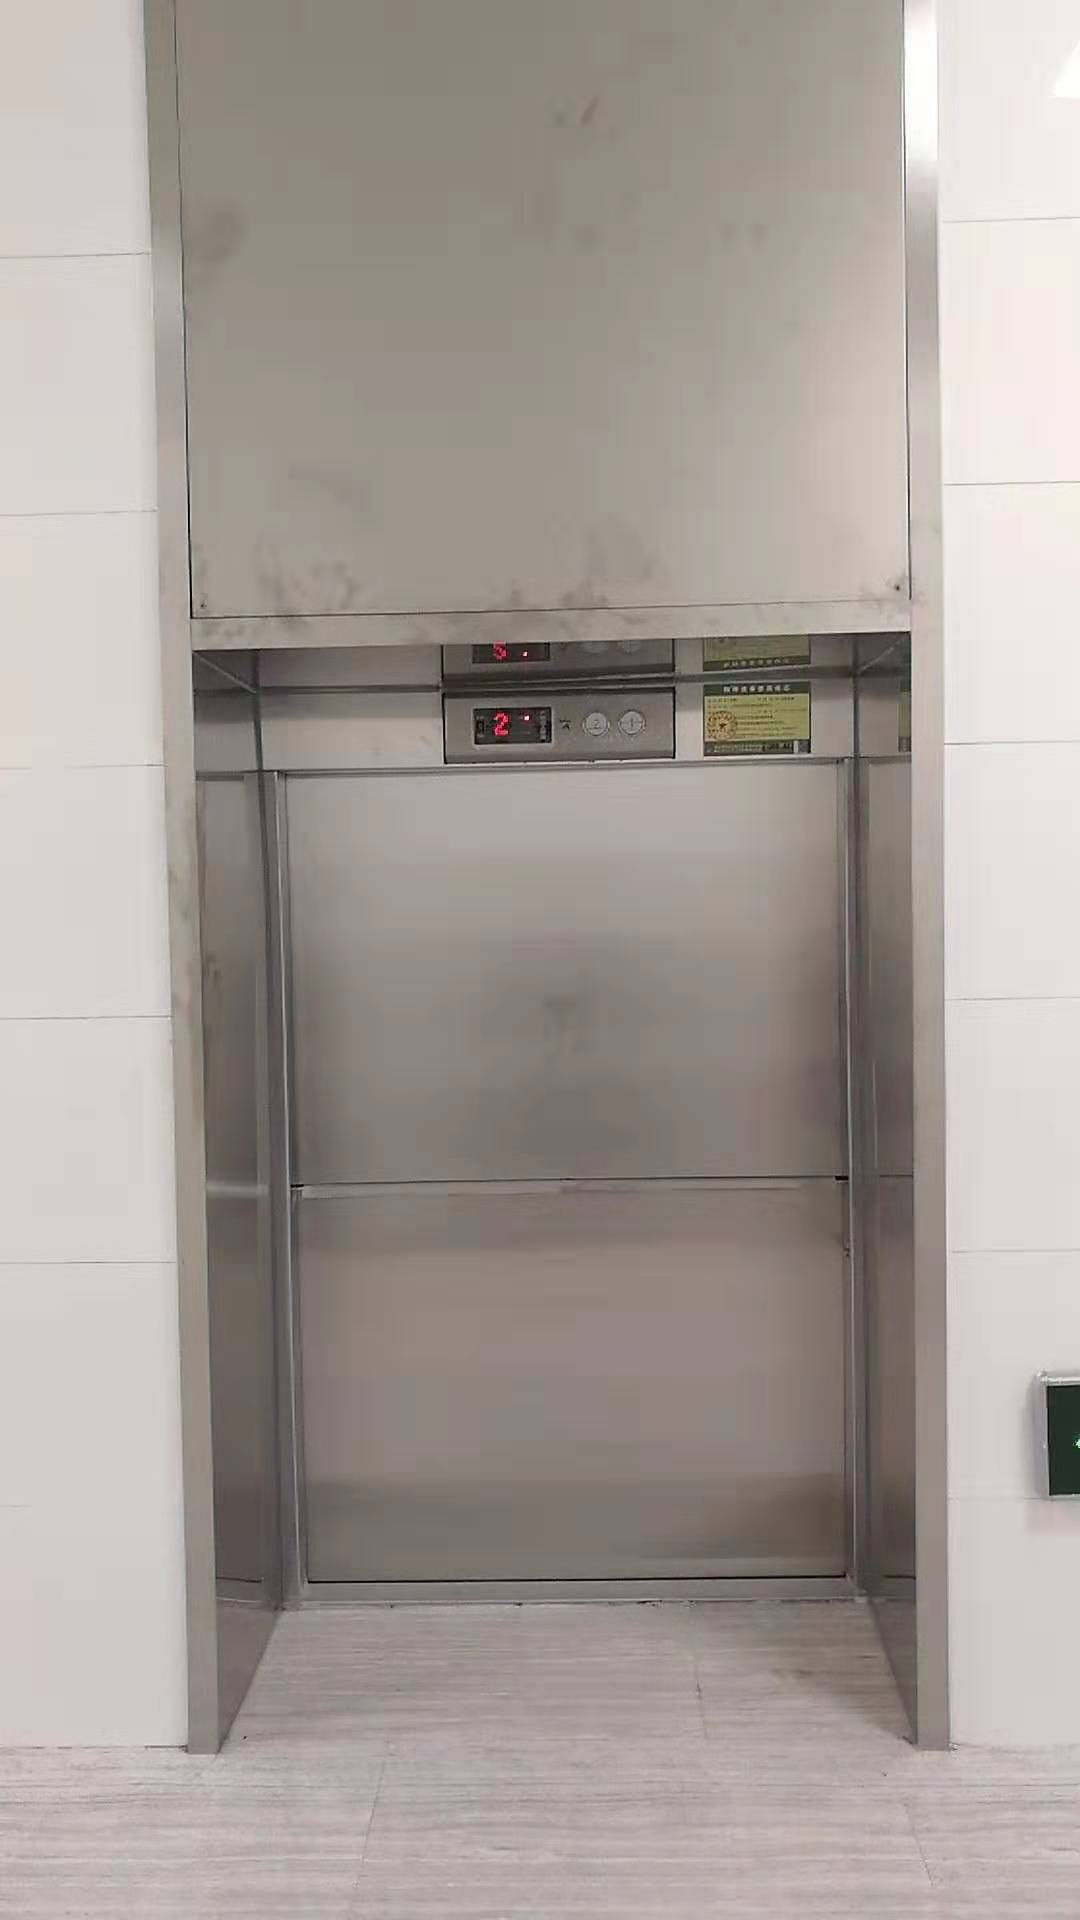 嘉兴菜梯杂物电梯制造厂 送菜电梯 专业人员安装维护保养